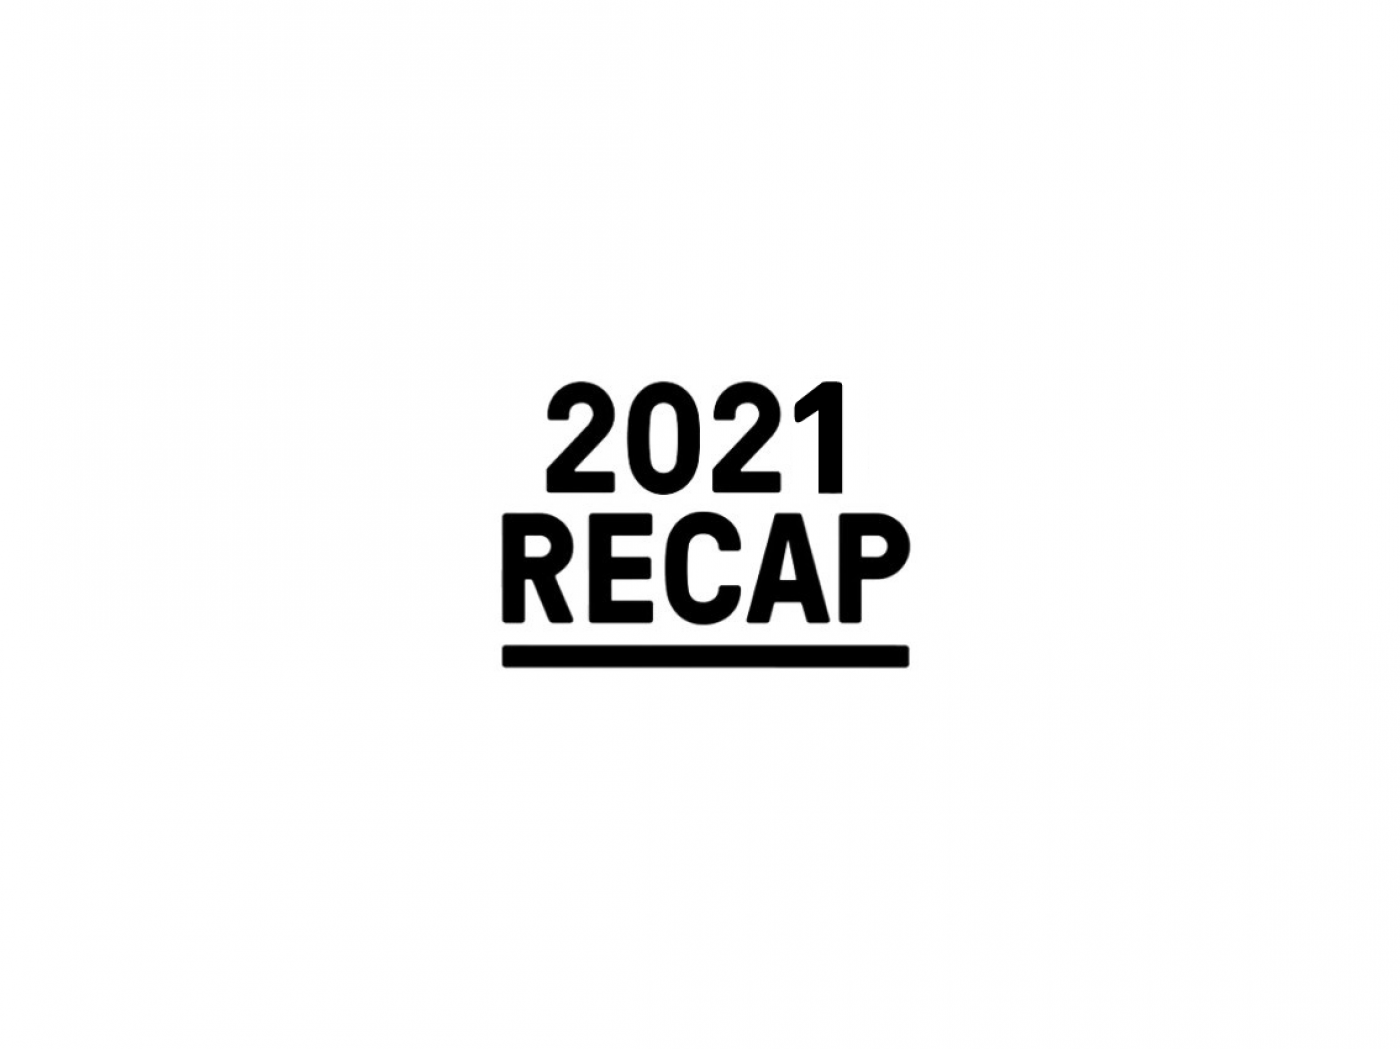 RECAP 2021